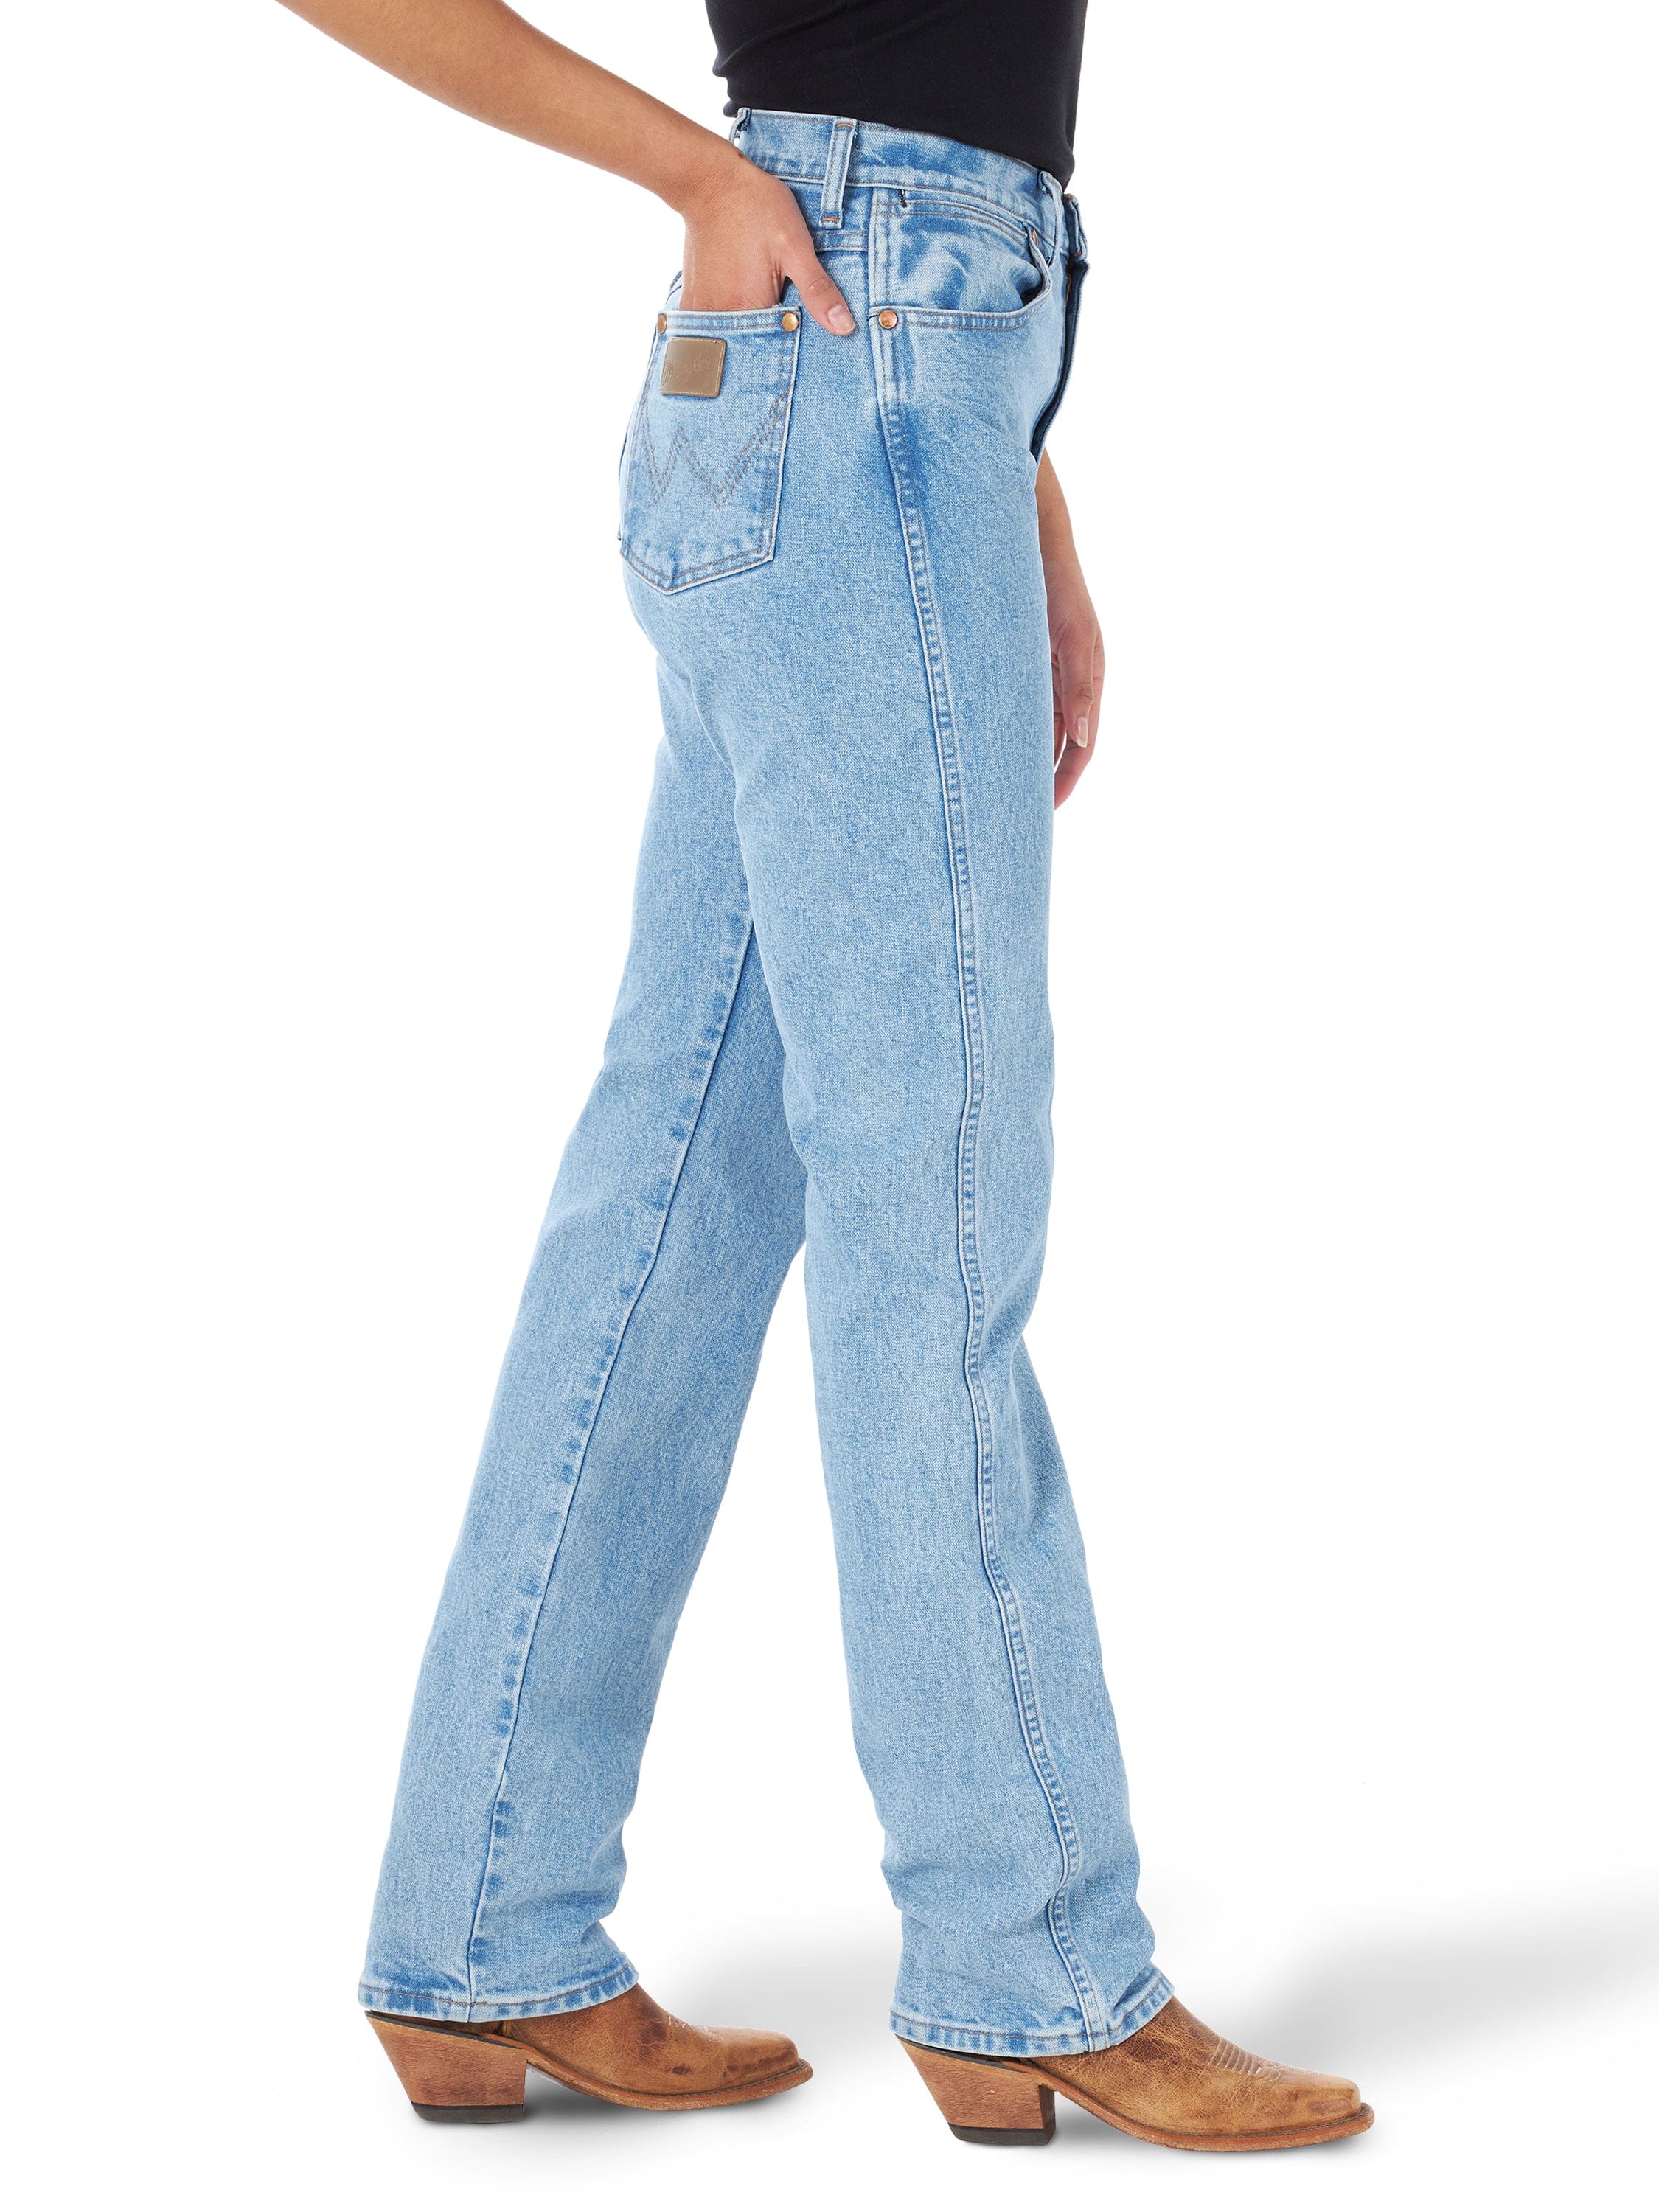 Women's Wrangler Cowboy Cut Antique Wash Slim Fit Jeans 1014MWZAT -  Russell's Western Wear, Inc.